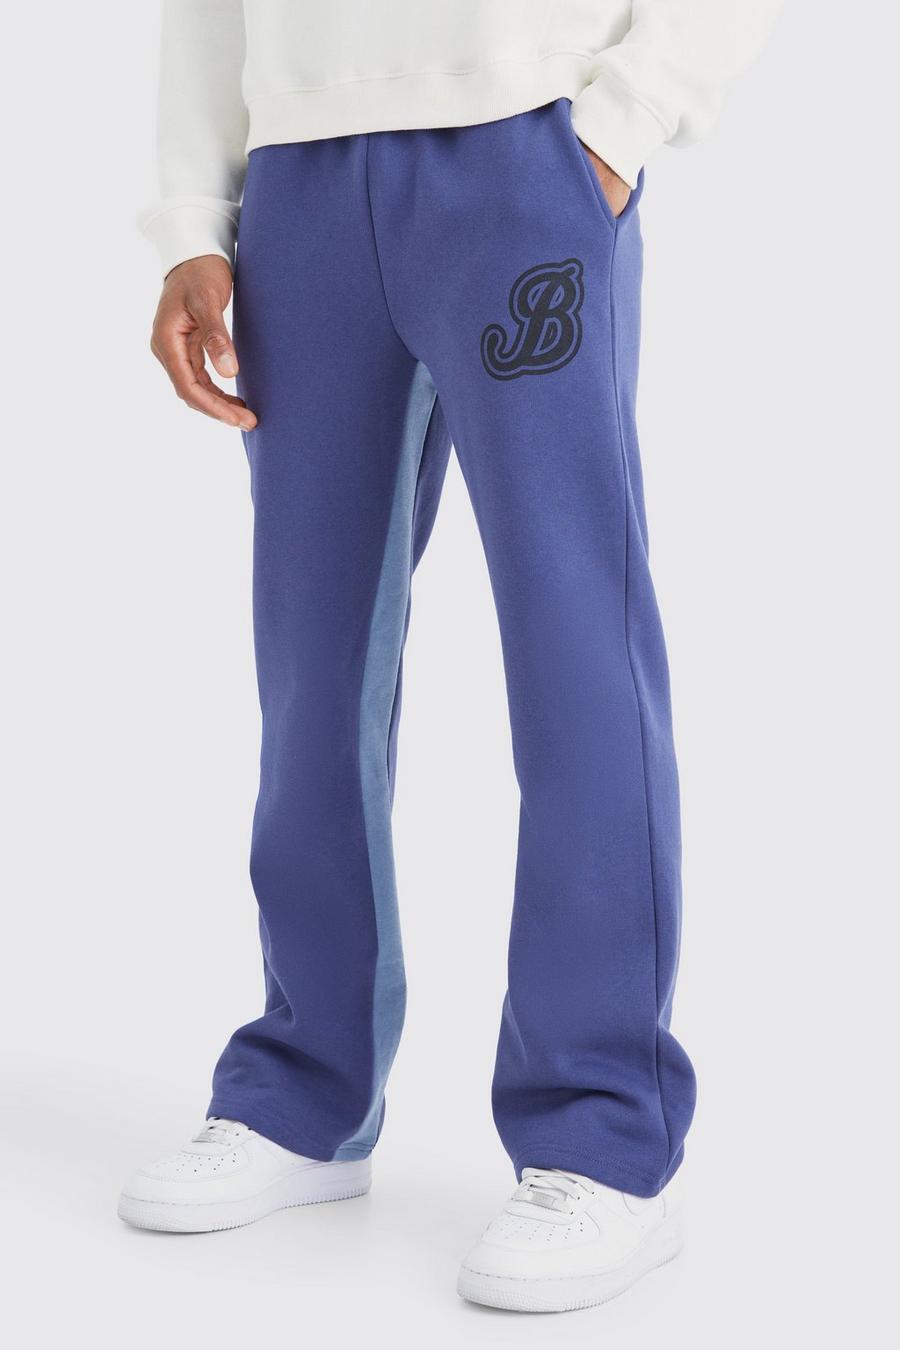 Pantaloni tuta stile Varsity con inserti B, Slate blue